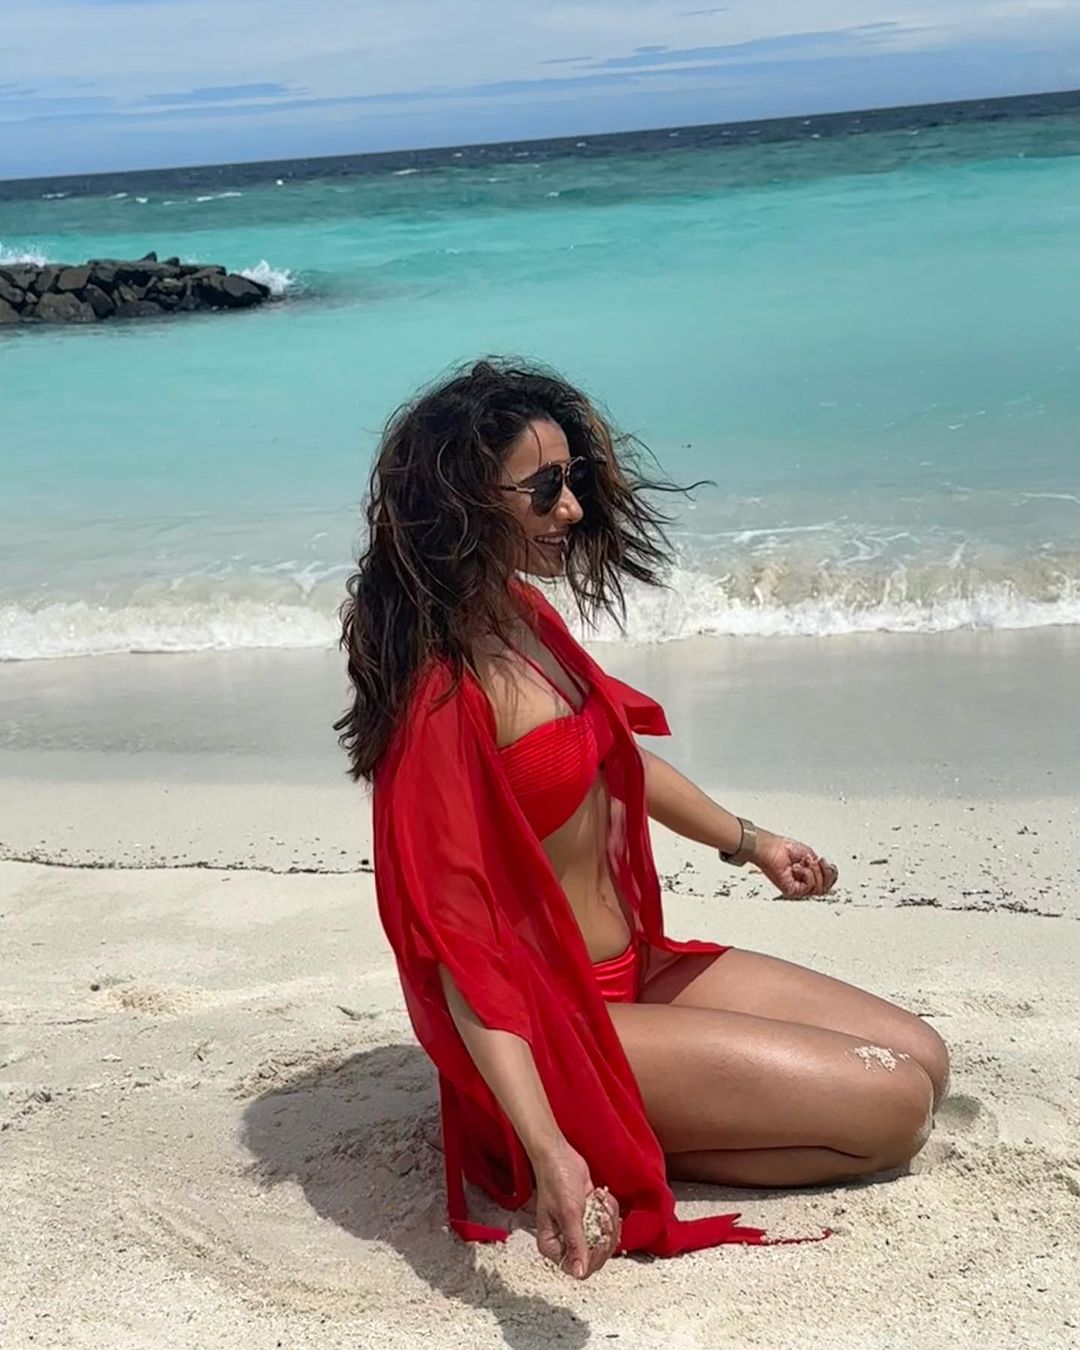 rakul-preeth-singh-glamours-looks-in-hot-red-bikini